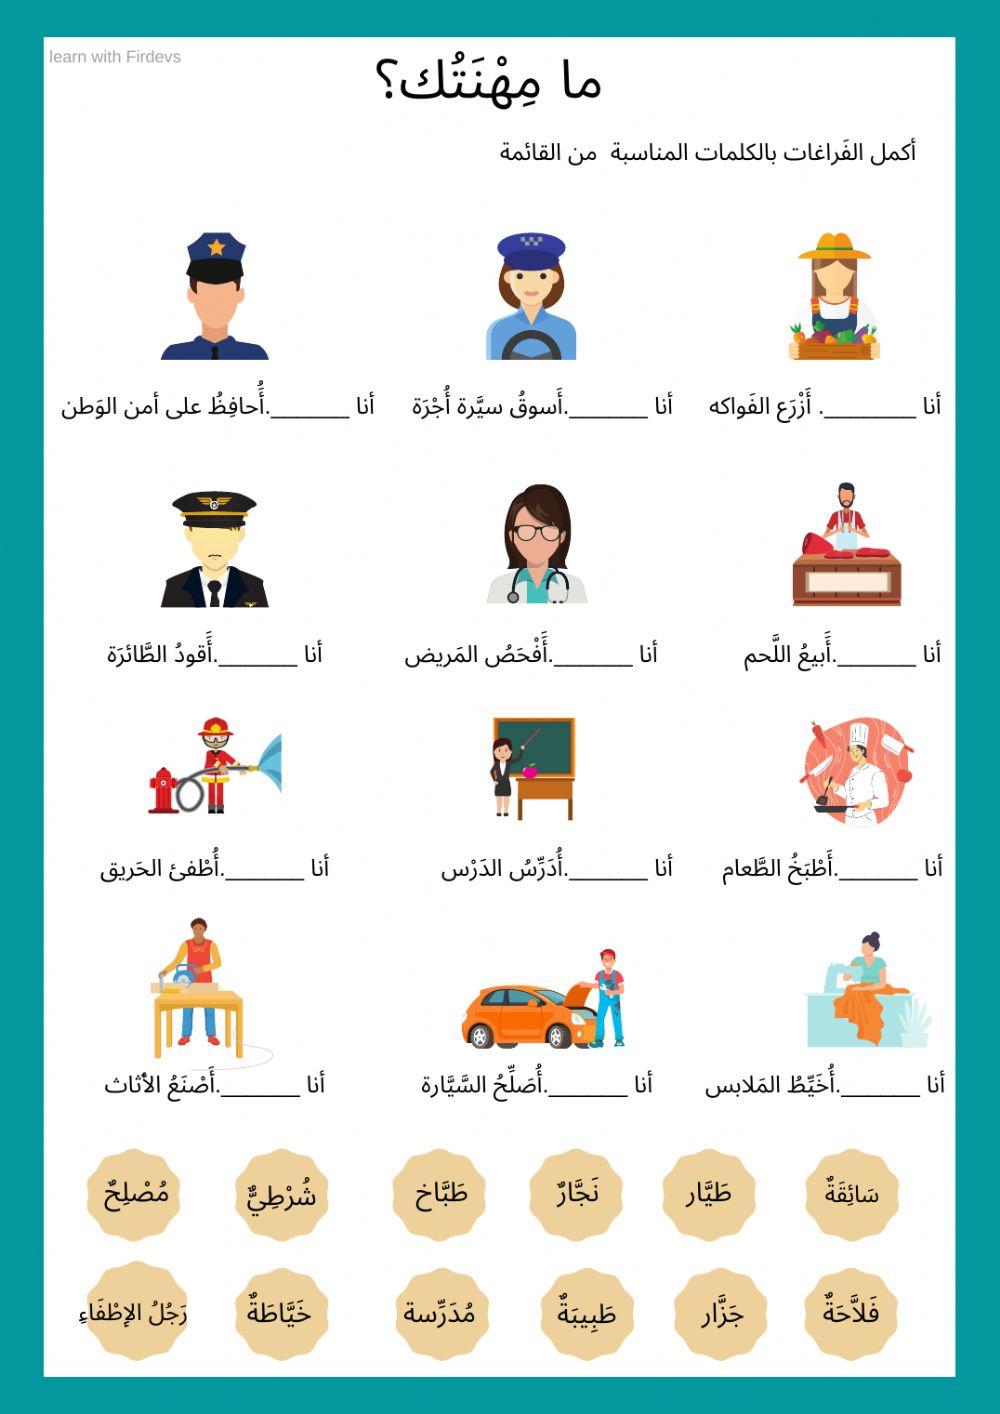 Arabic jobs - المهن